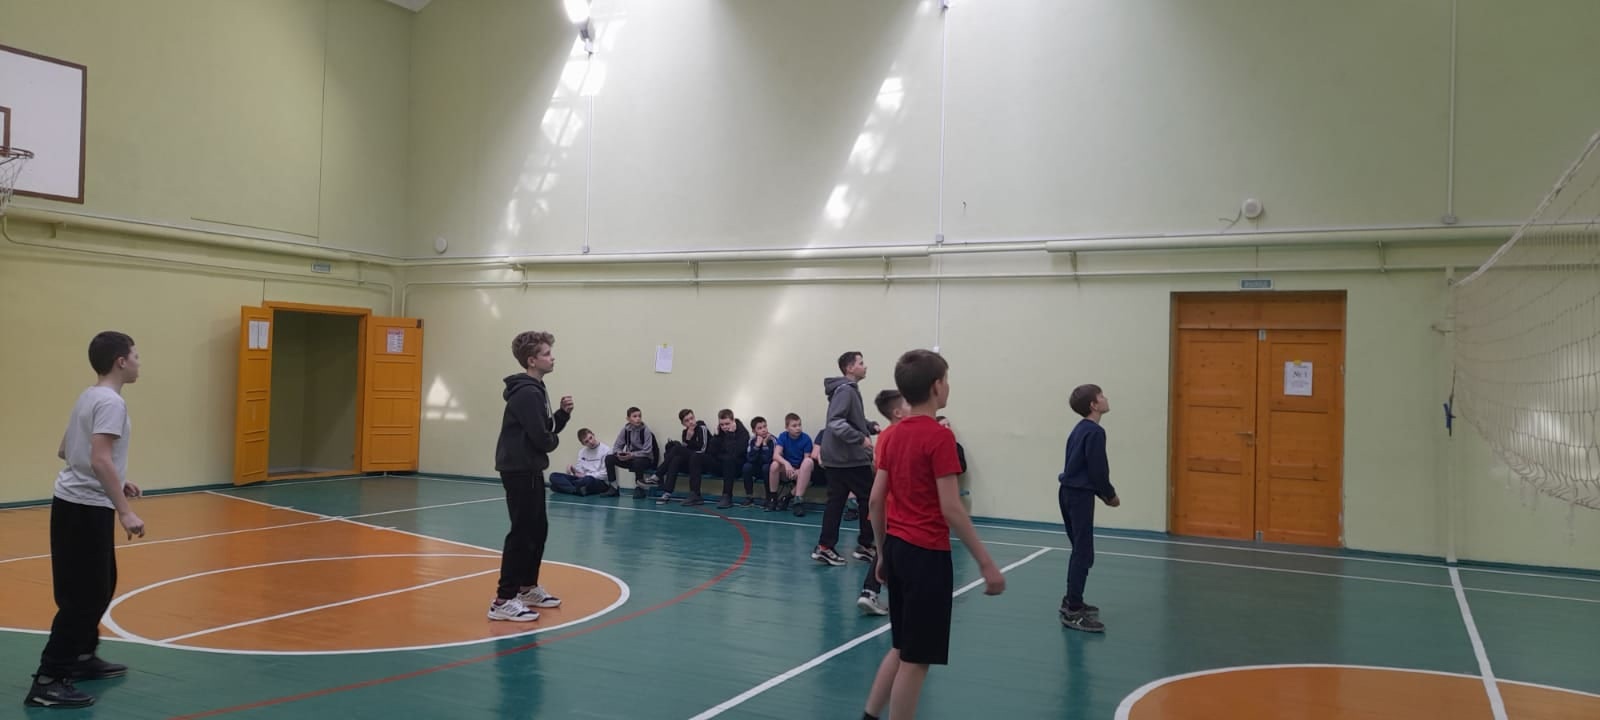 Подведены итоги соревнований по волейболу в зачет школьной спартакиады среди 6-7 классов..